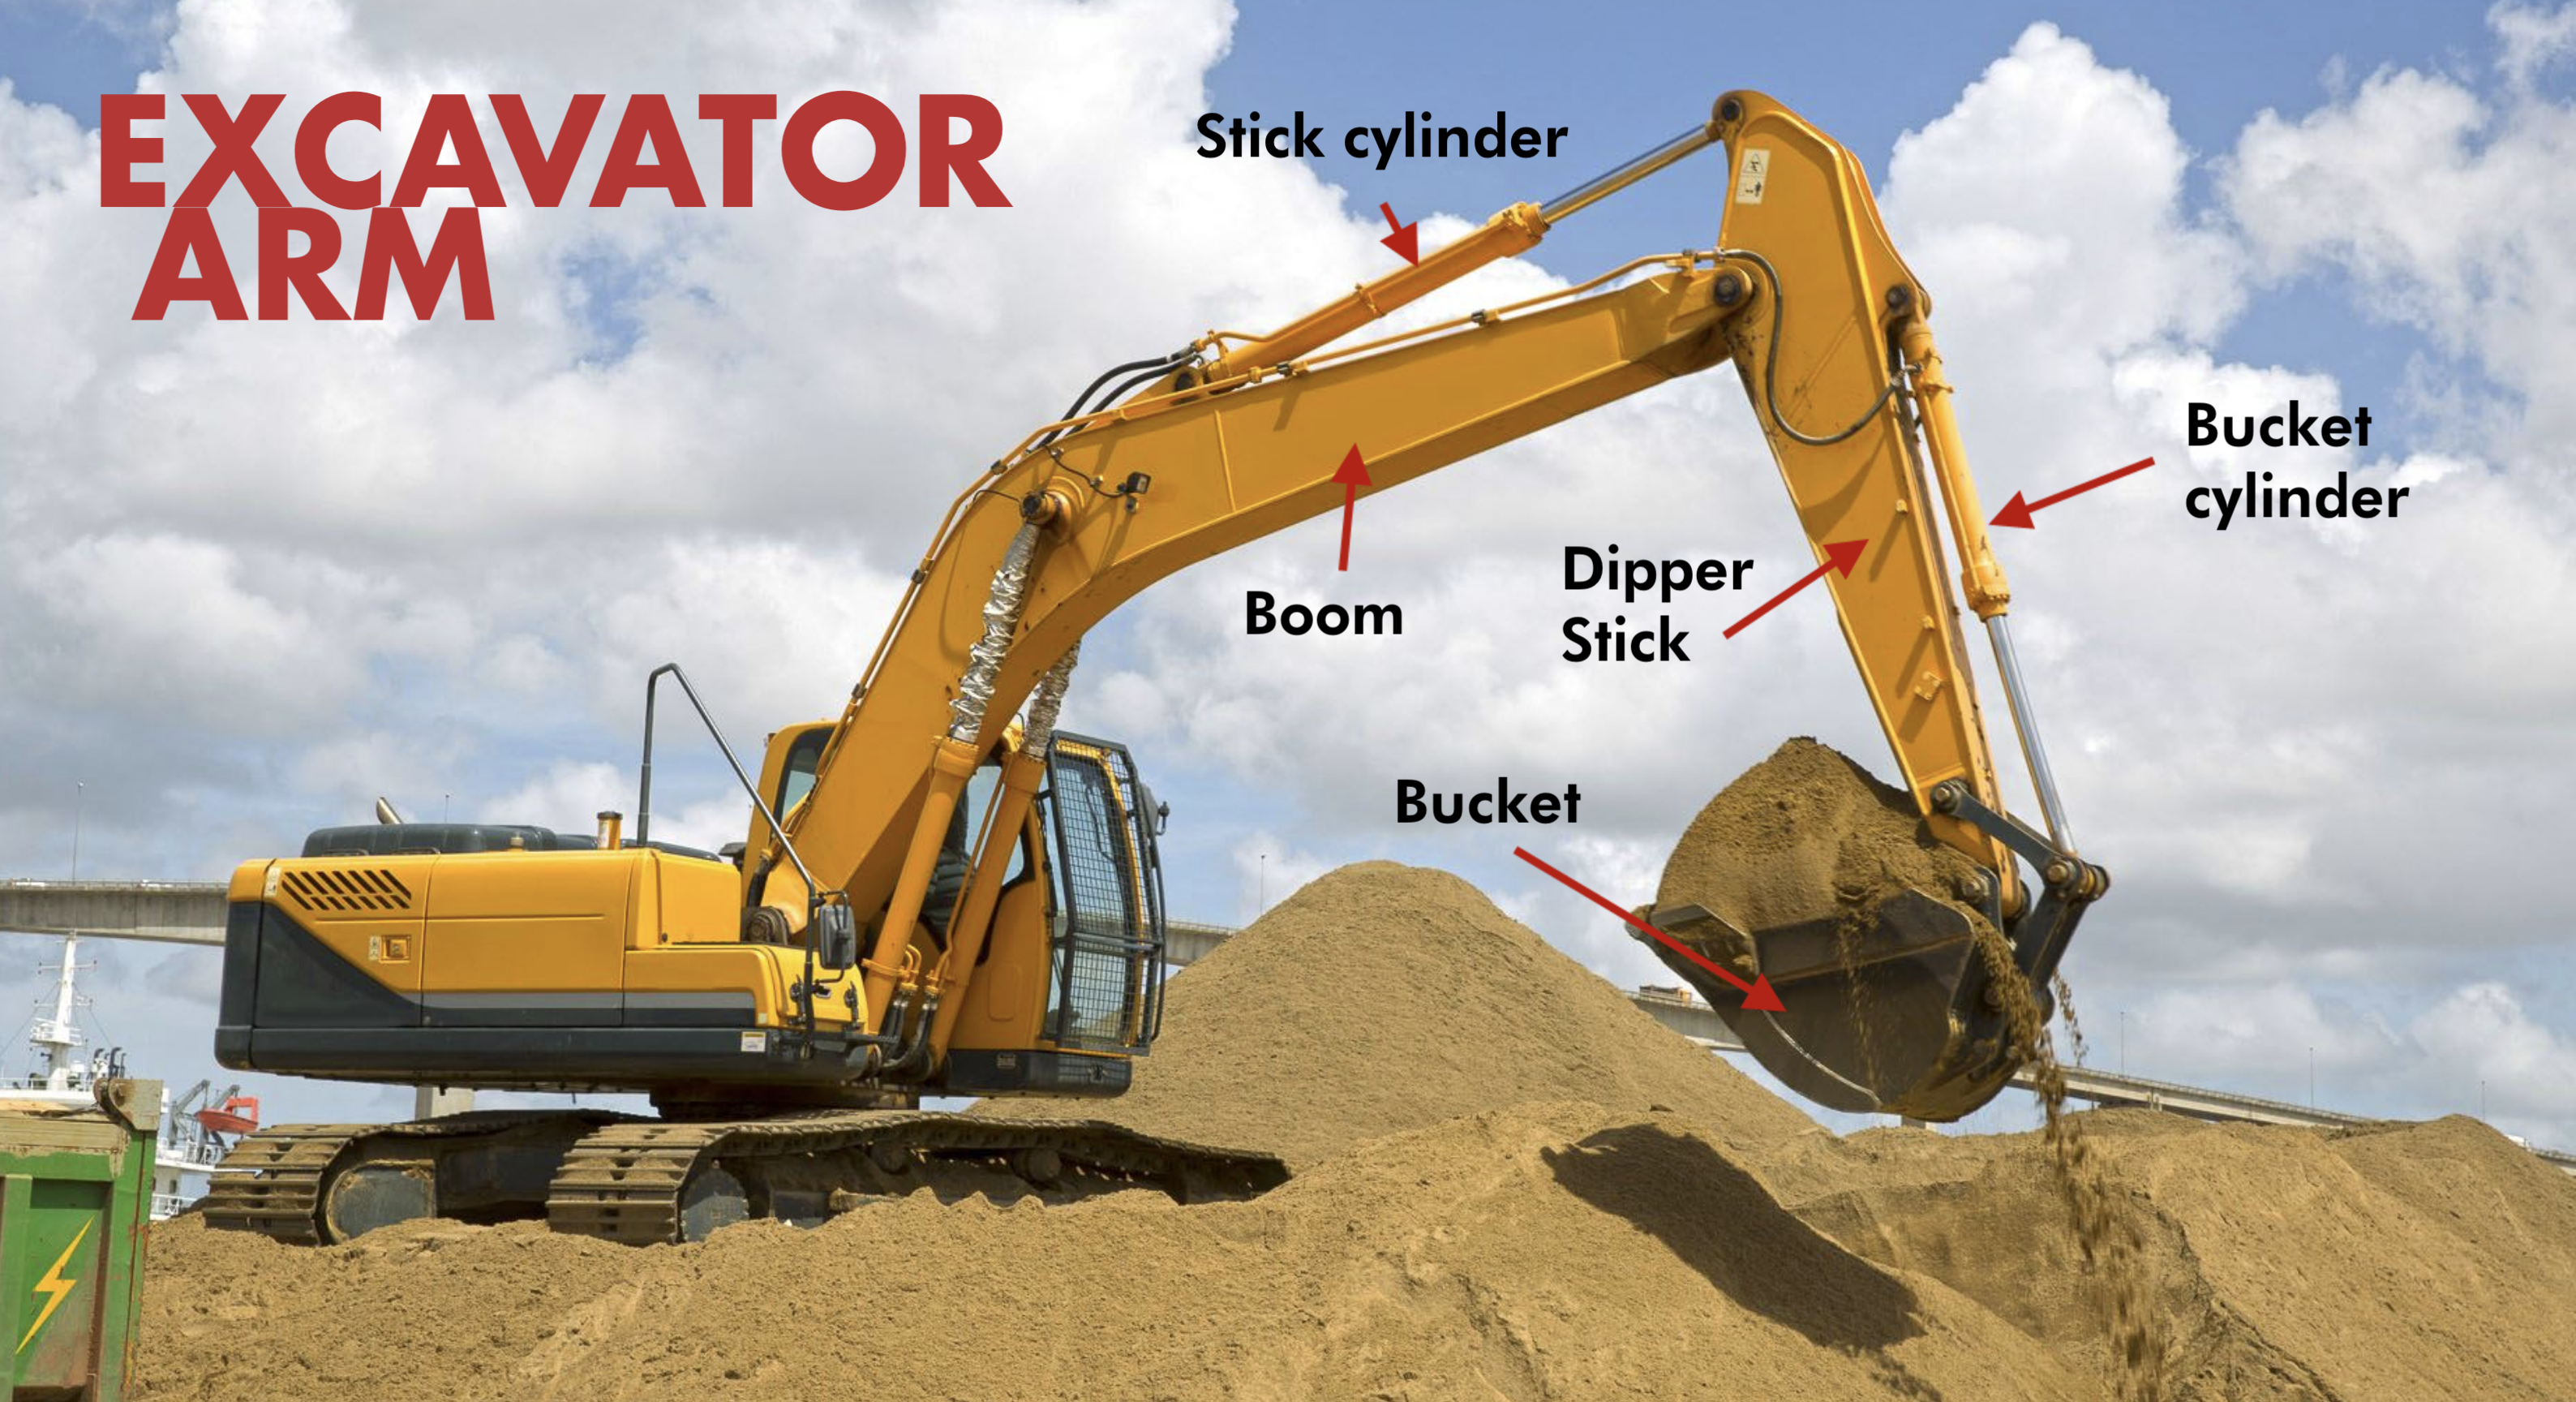 Excavator Parts Diagram